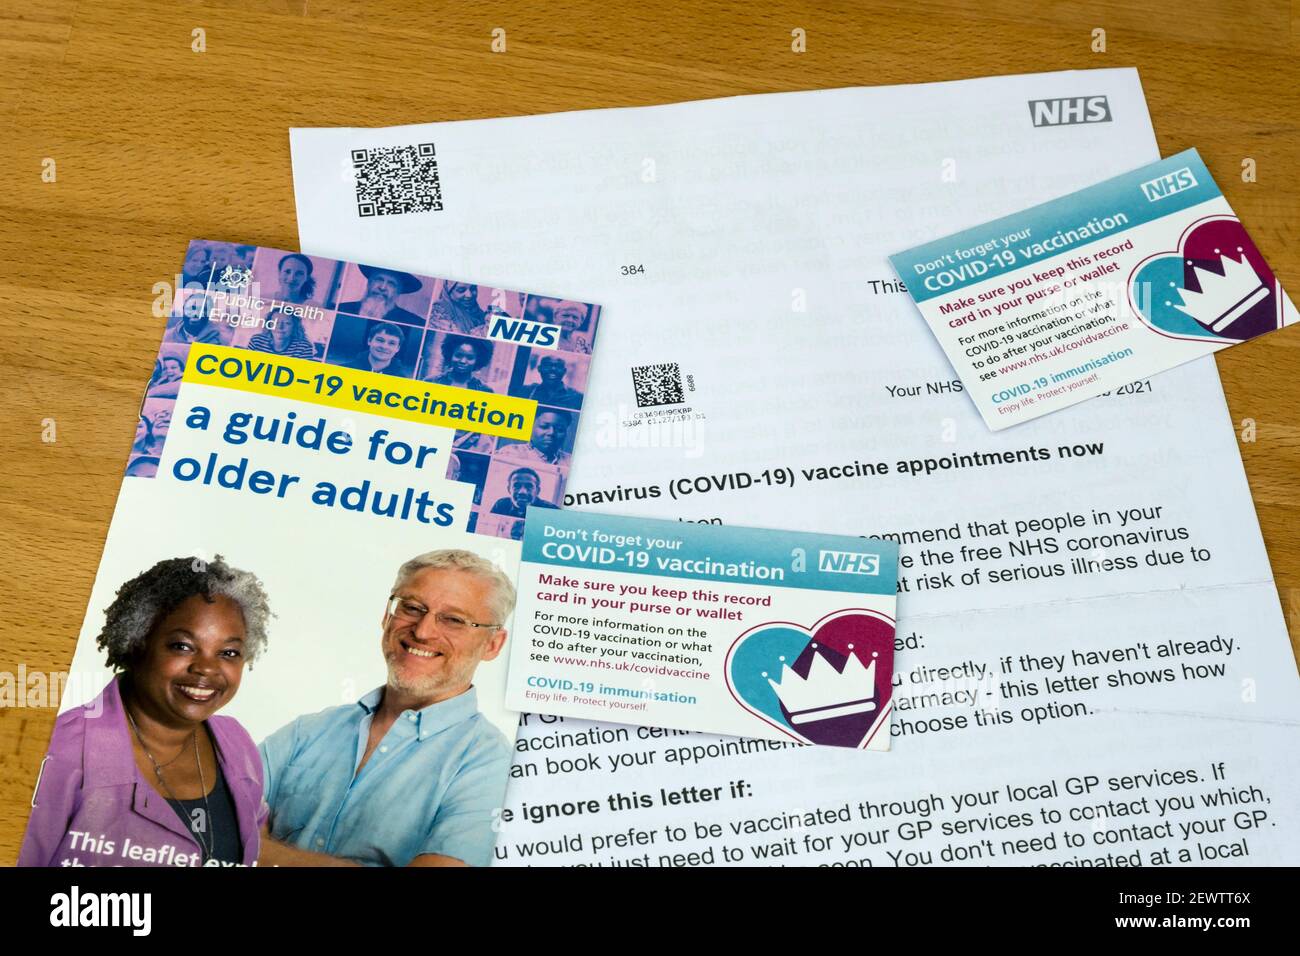 Un guide NHS et une lettre invitant à la vaccination Covid-19 pour les adultes plus âgés, avec deux fiches de vaccination Covid-19. Banque D'Images